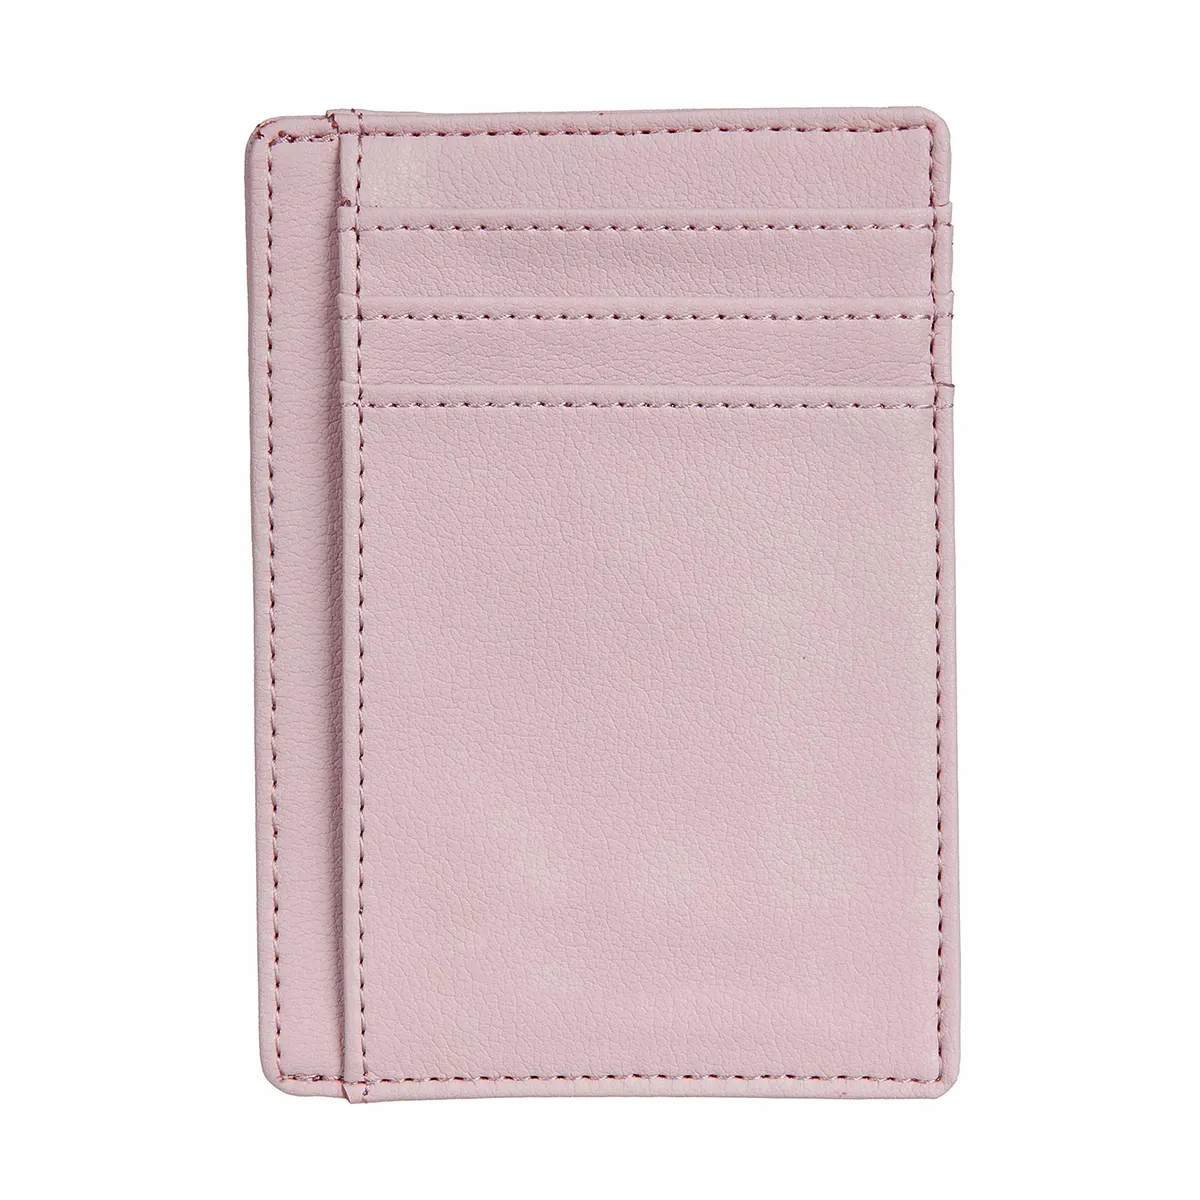 Vlastné predné vrecko v minimalistickom štýle peňaženky